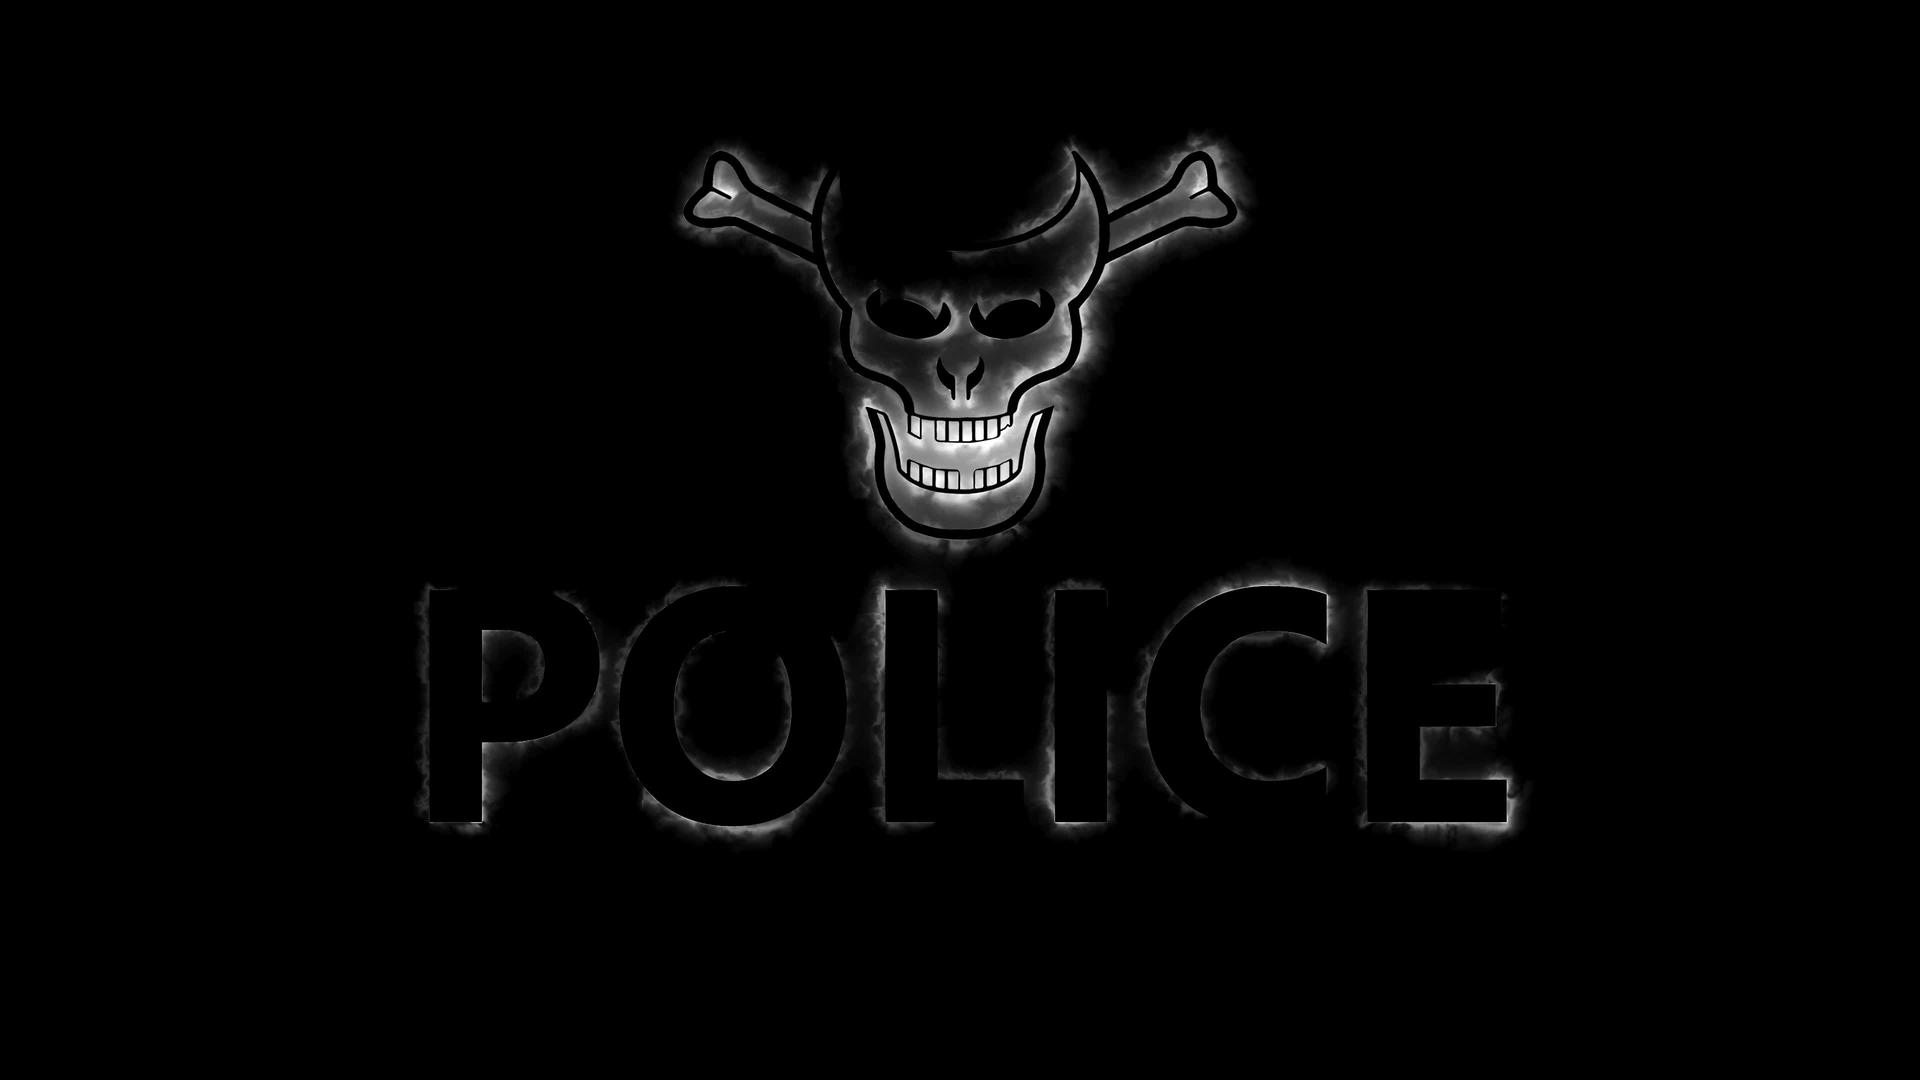 典型的警察标志以单词和头骨的形式出现其影响是烟雾和视频的预览图